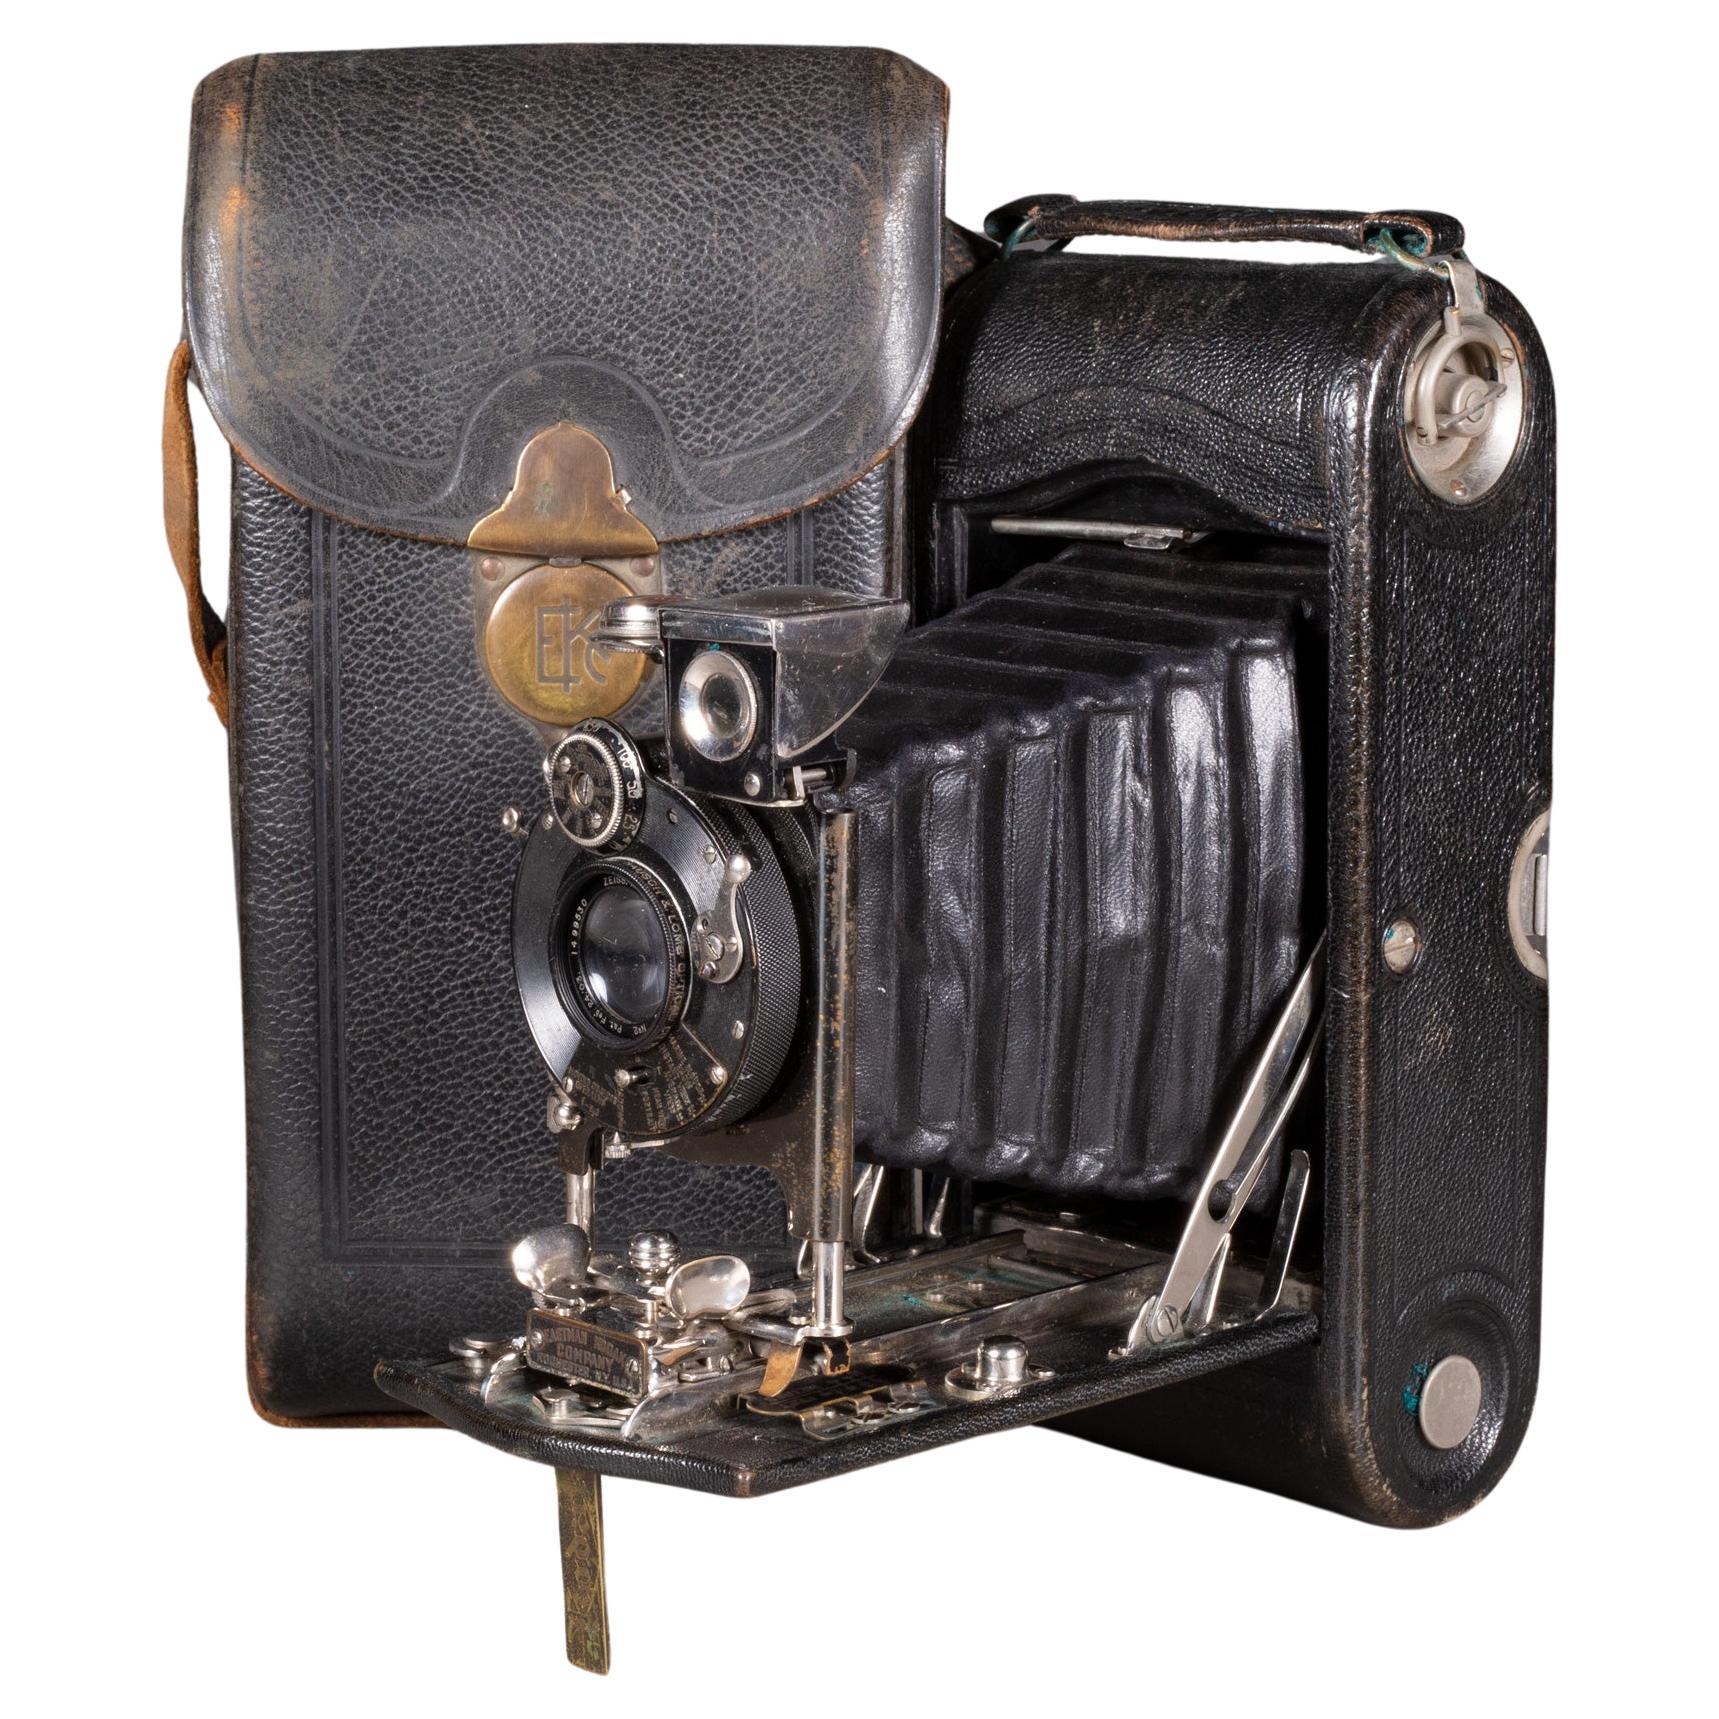 Large Kodak No. 2 Folding Camera with Leather Case c.1903 (FREE SHIPPING)